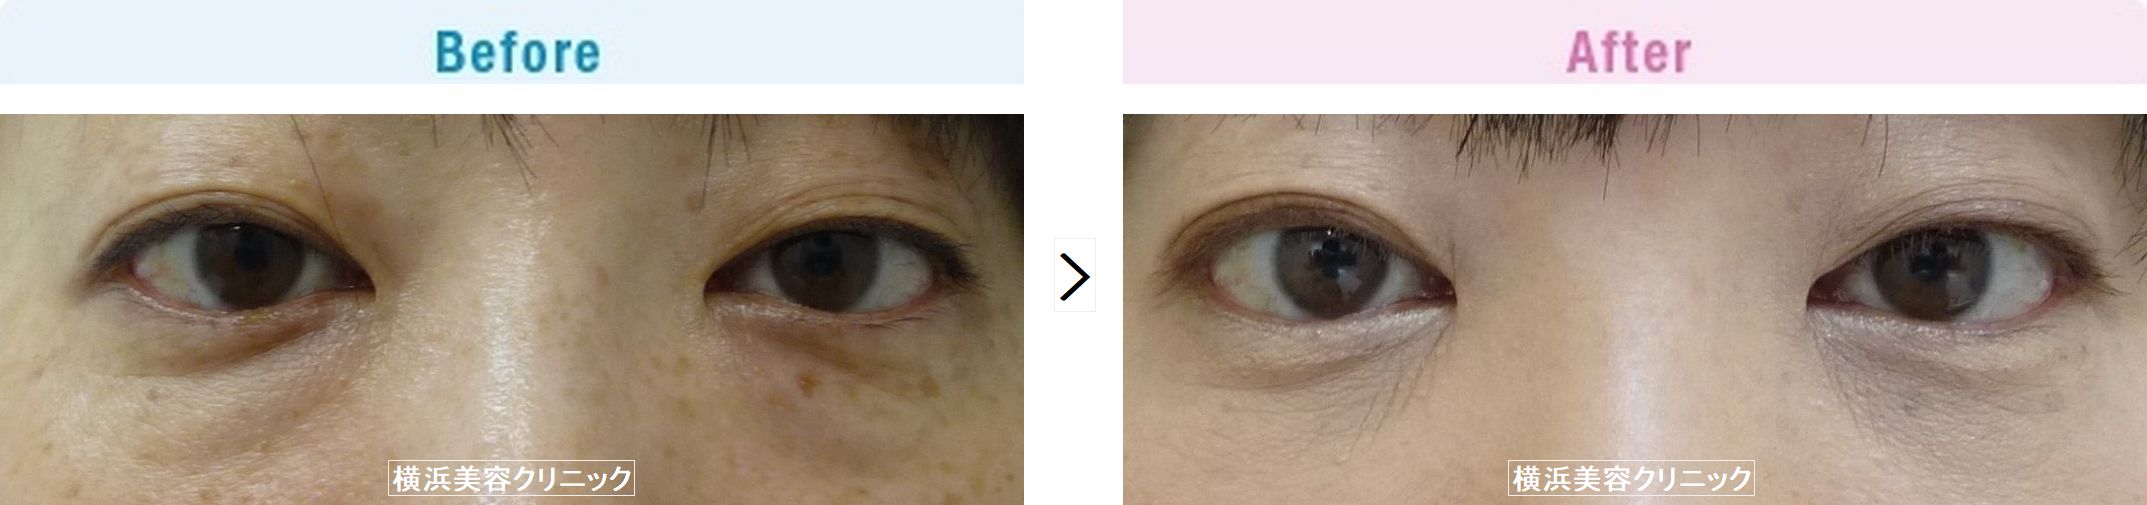 【30代女性】切らない目の下の脂肪取り（くま取り）で目の下の膨らみが減ることにより、疲れた印象が改善します。【横浜美容クリニック】